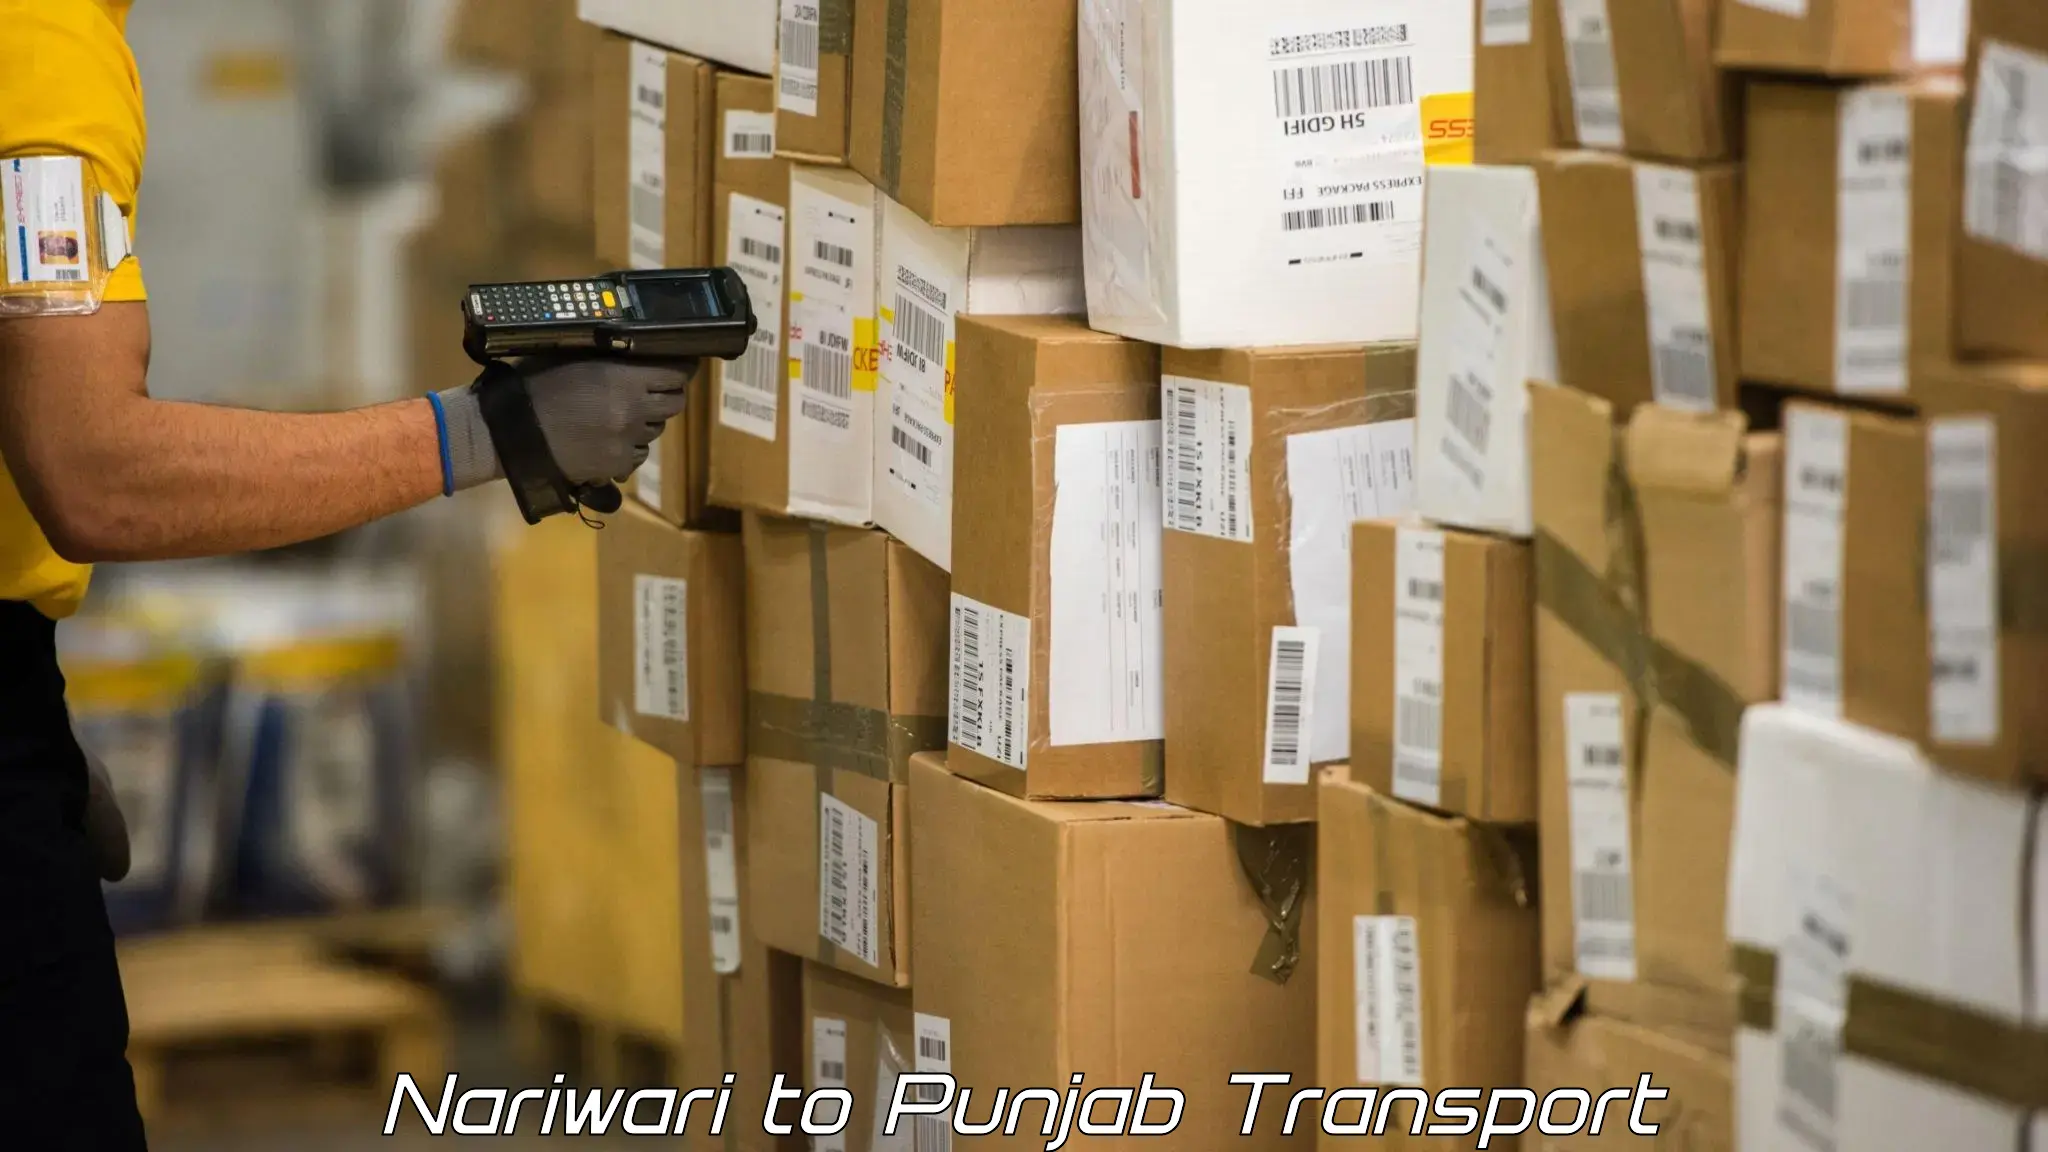 Air freight transport services Nariwari to Punjab